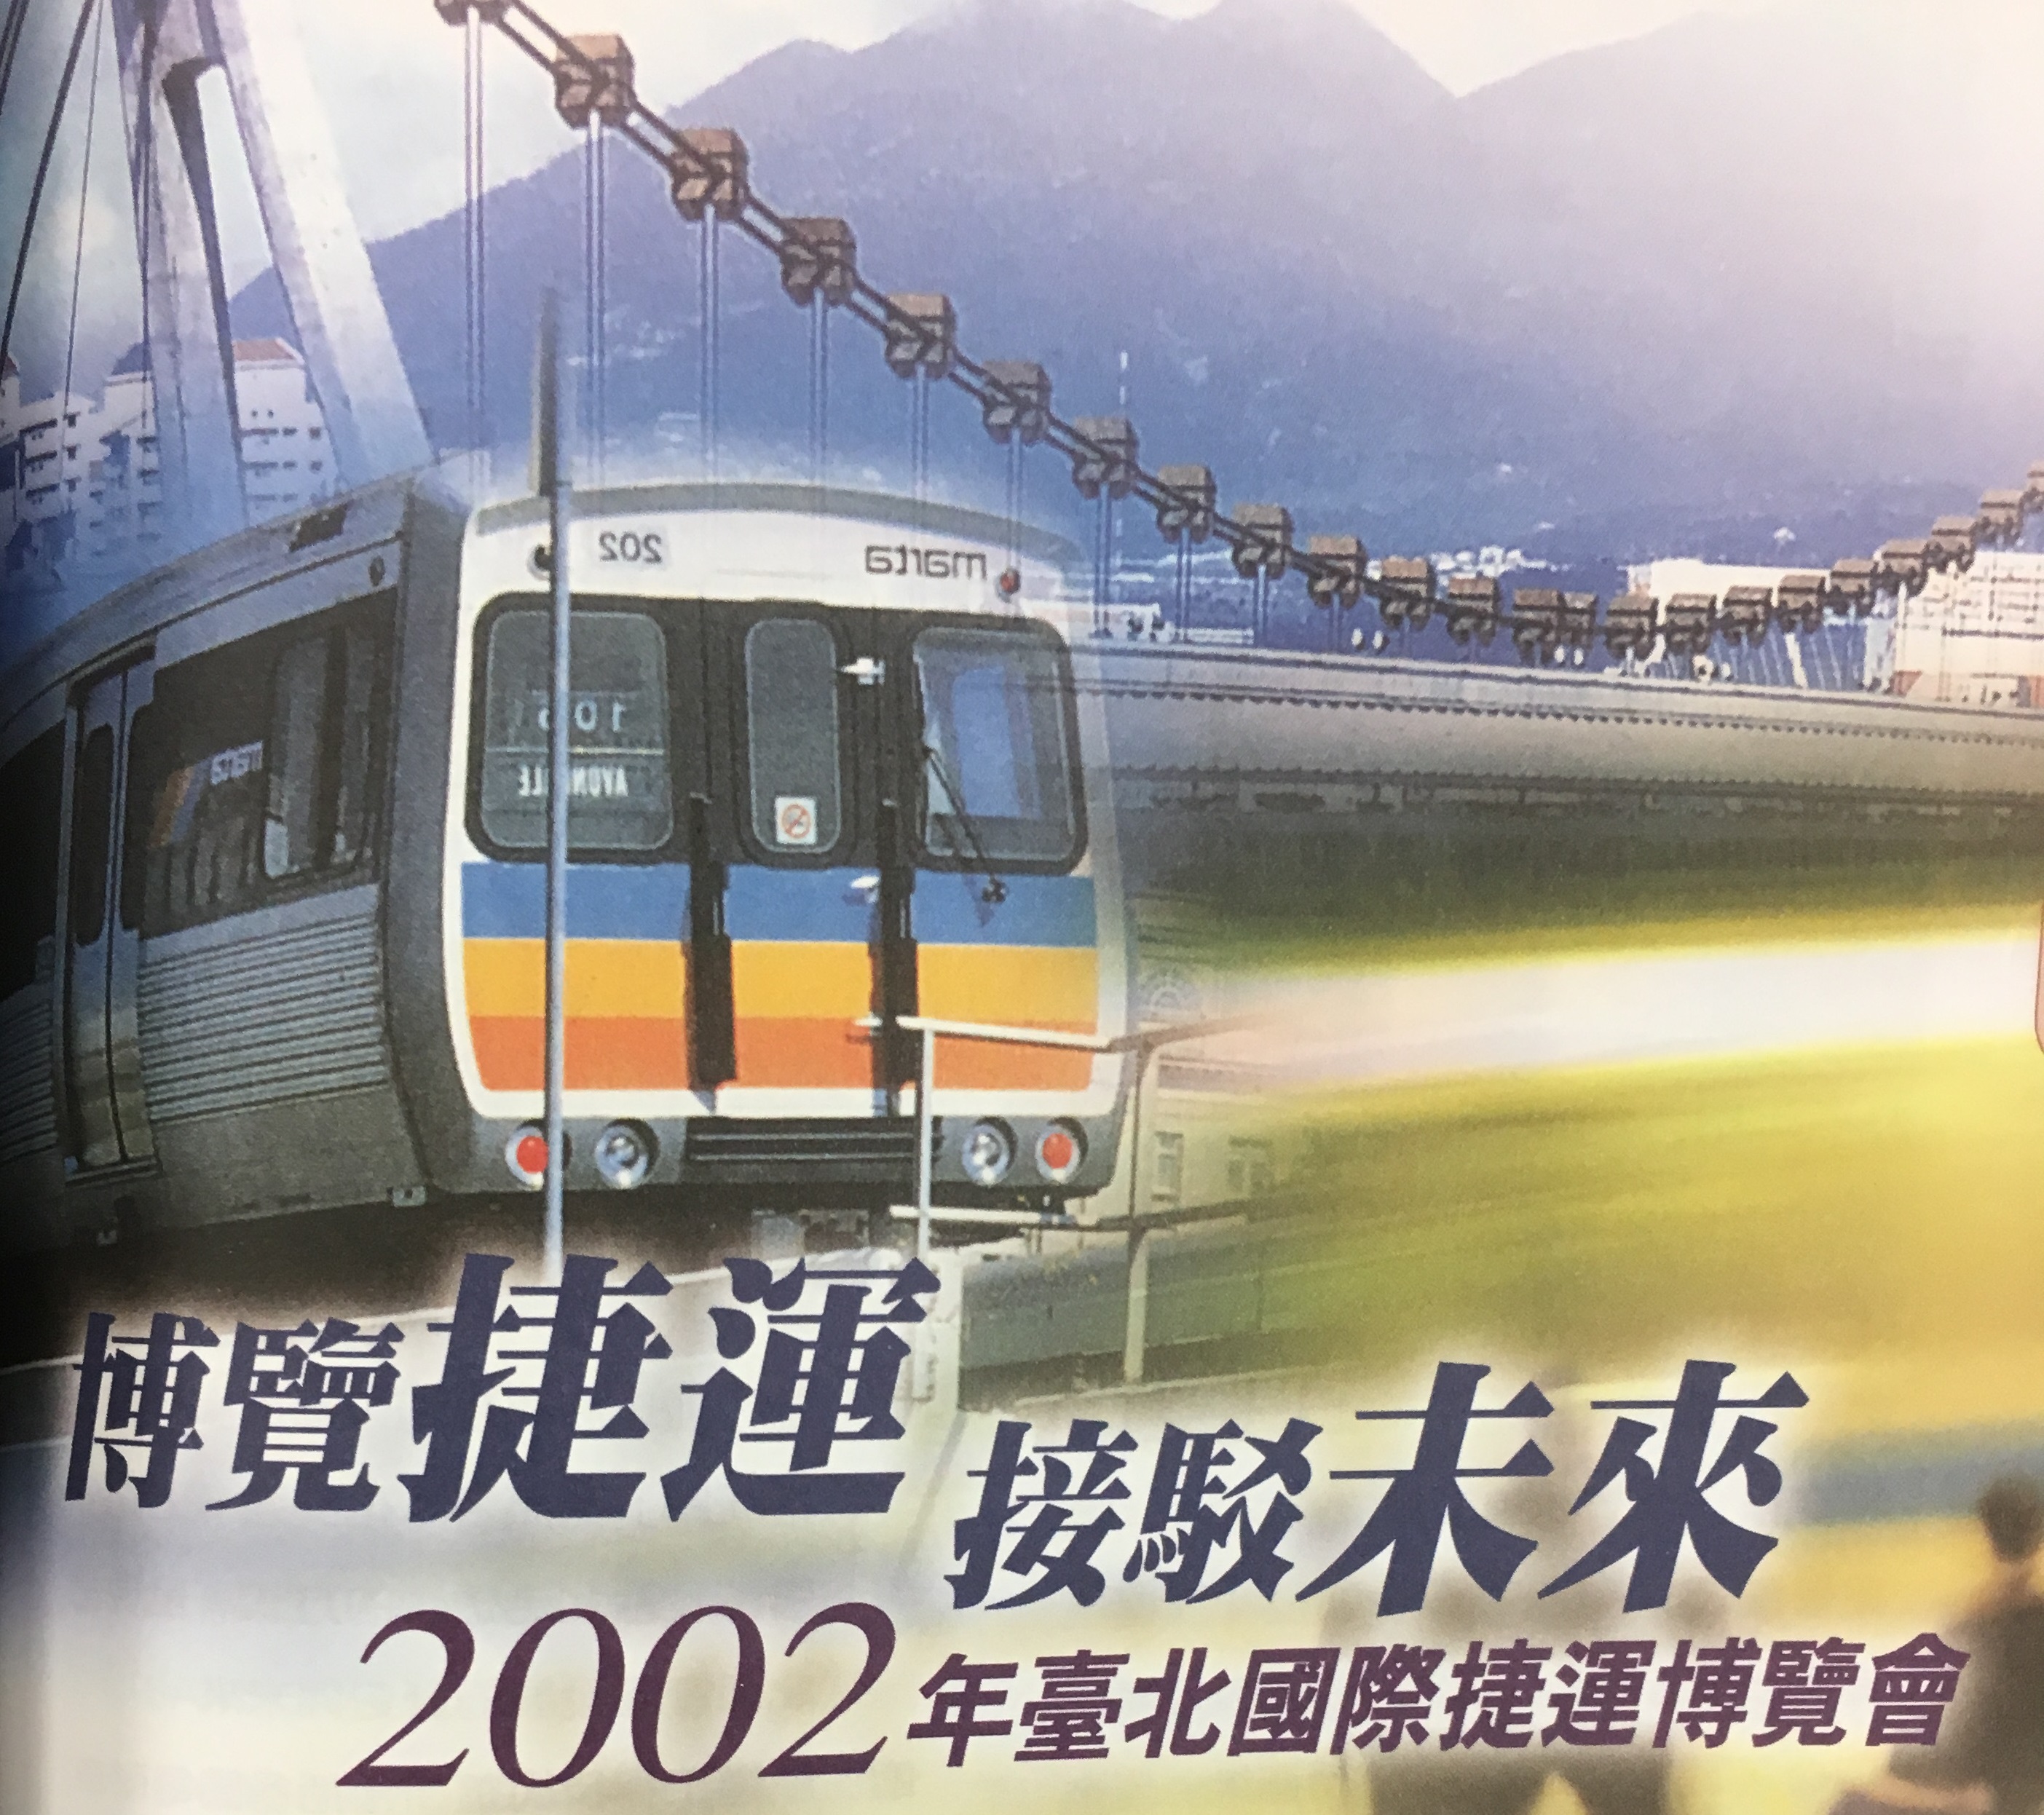 博覽捷運  接駁未來──2002年臺北國際捷運博覽會